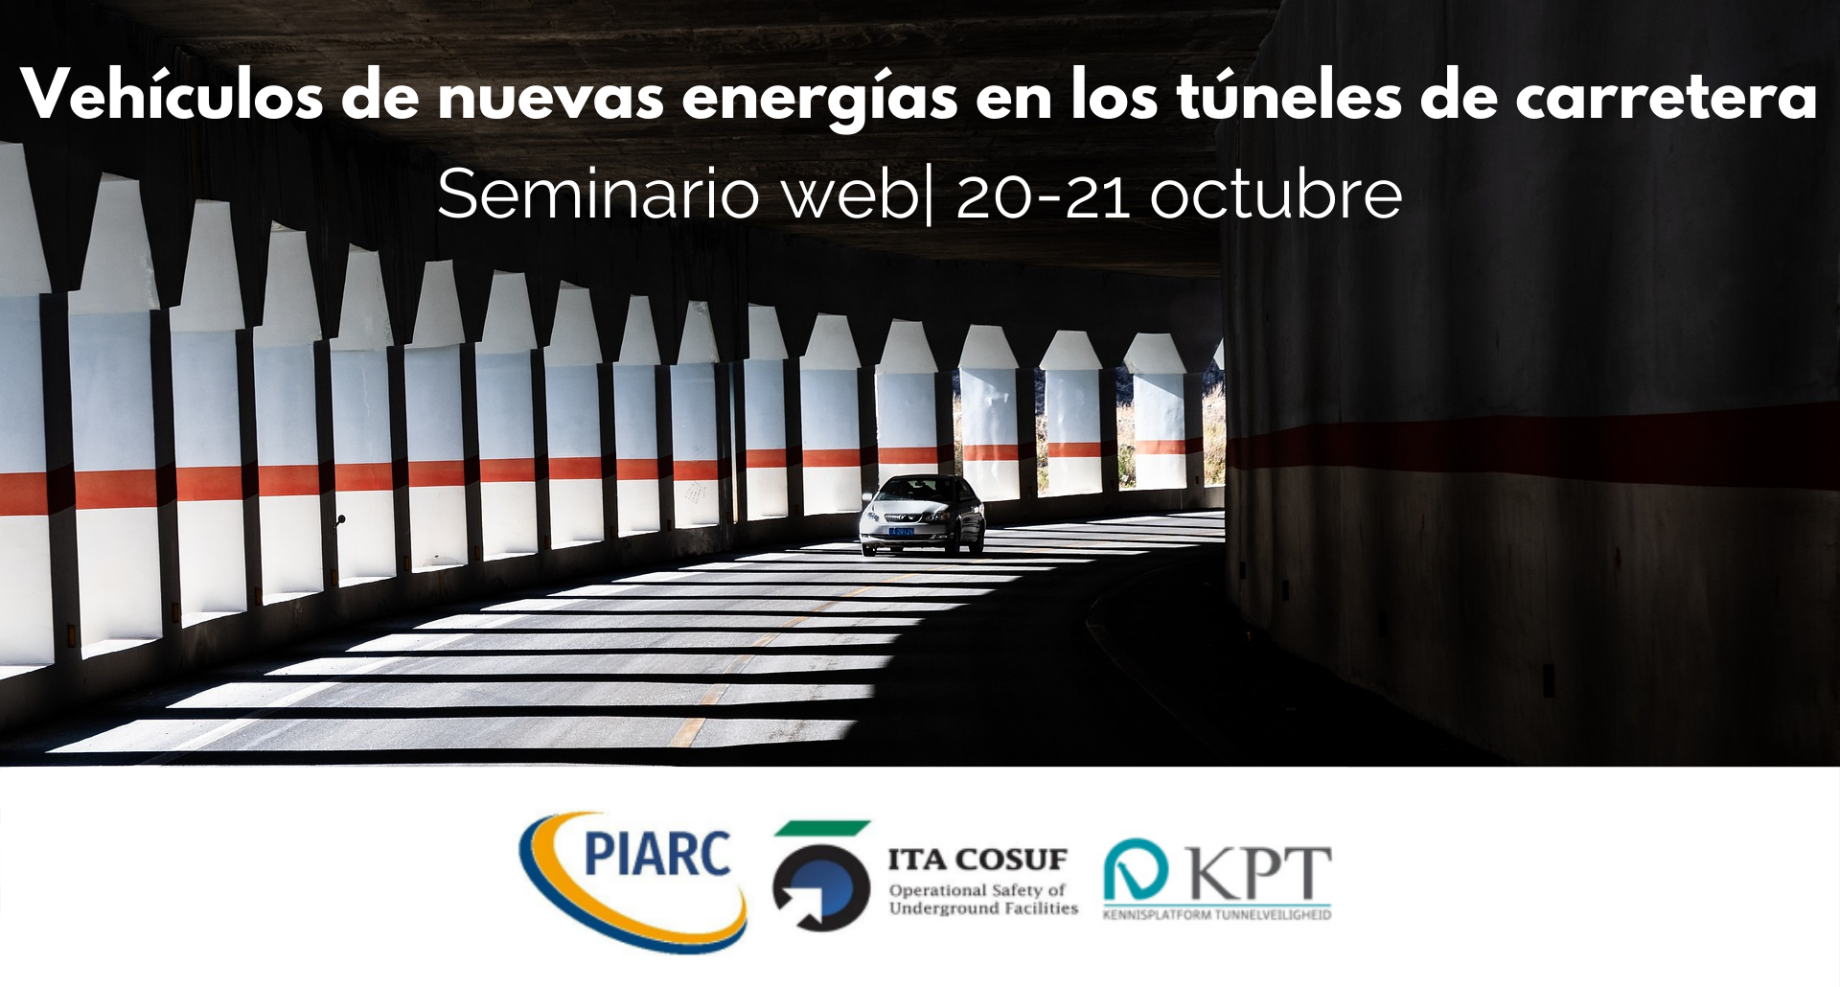 La seguridad en túneles y los vehículos de nuevas energías, en el foco del webinar organizado por PIARC, ITA-COSUF y KPT